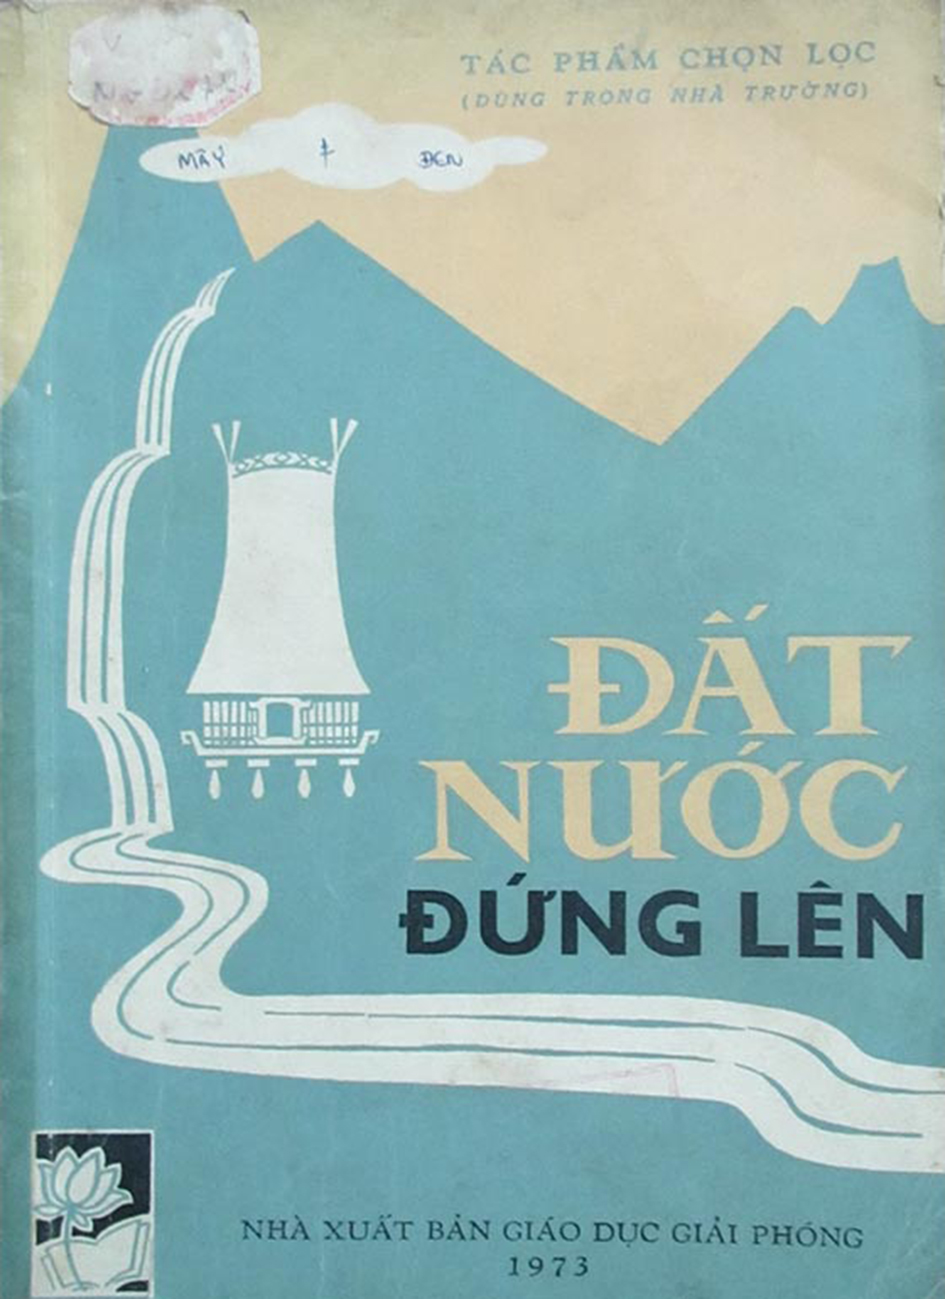 Dat Nuoc Dung Len